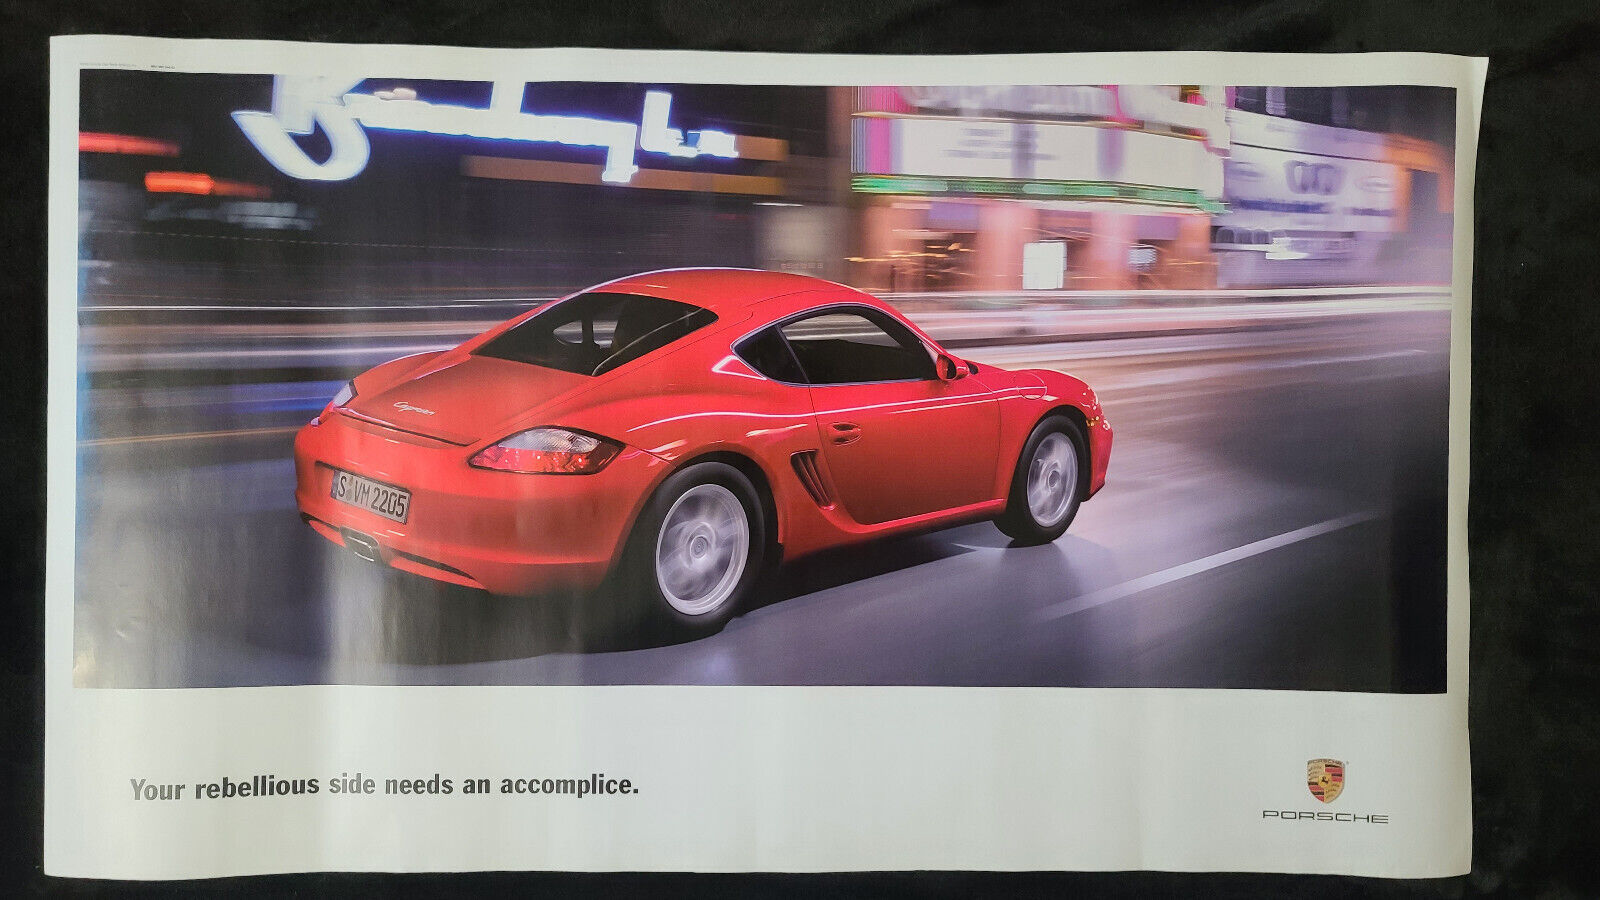 Porsche Cayman Rebellious Side Poster *RARE* OOP Not Mass Produced